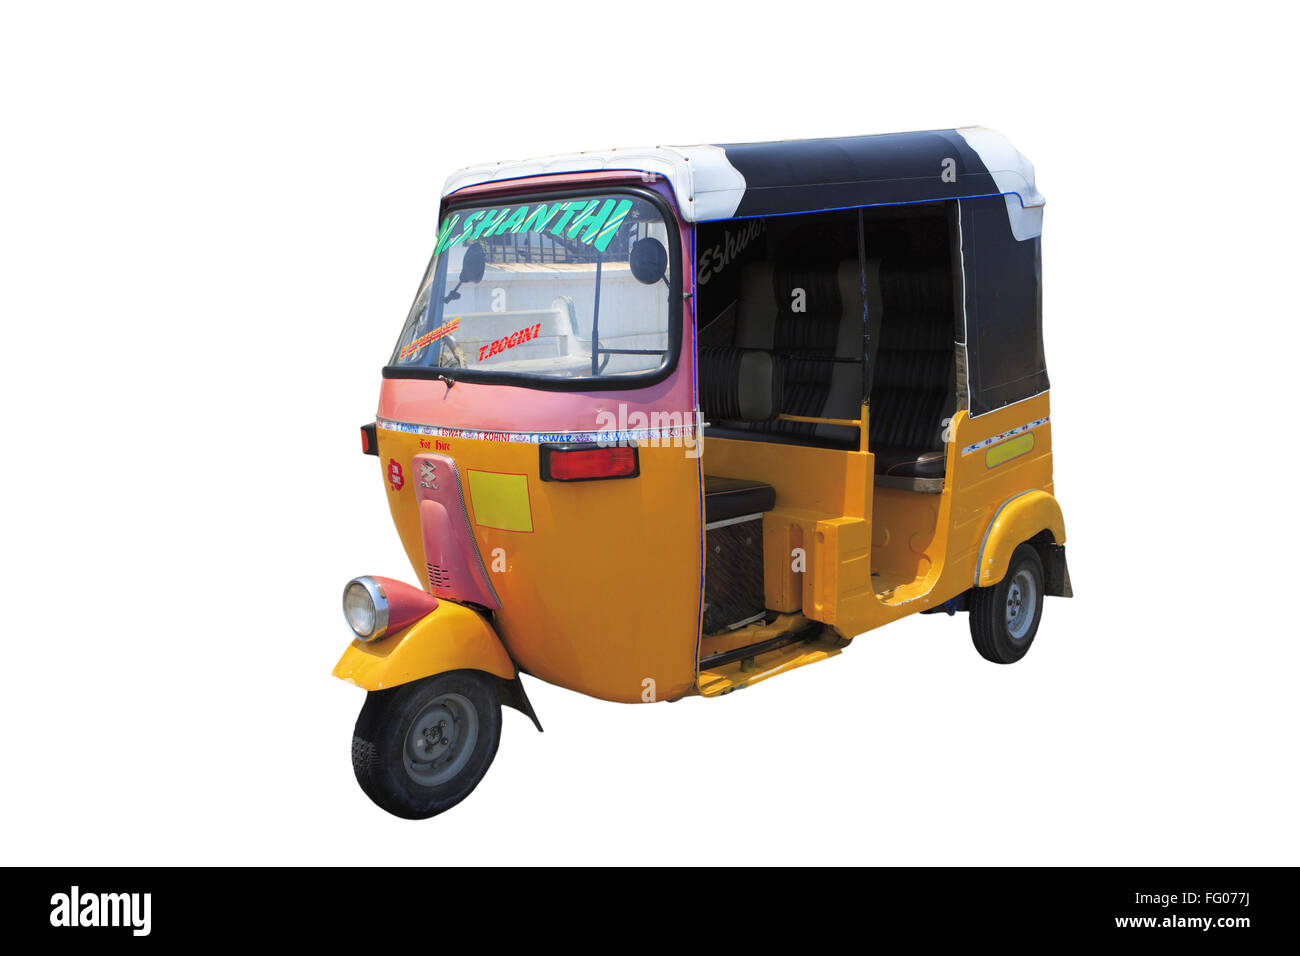 Auto rickshaw on white background Stock Photo